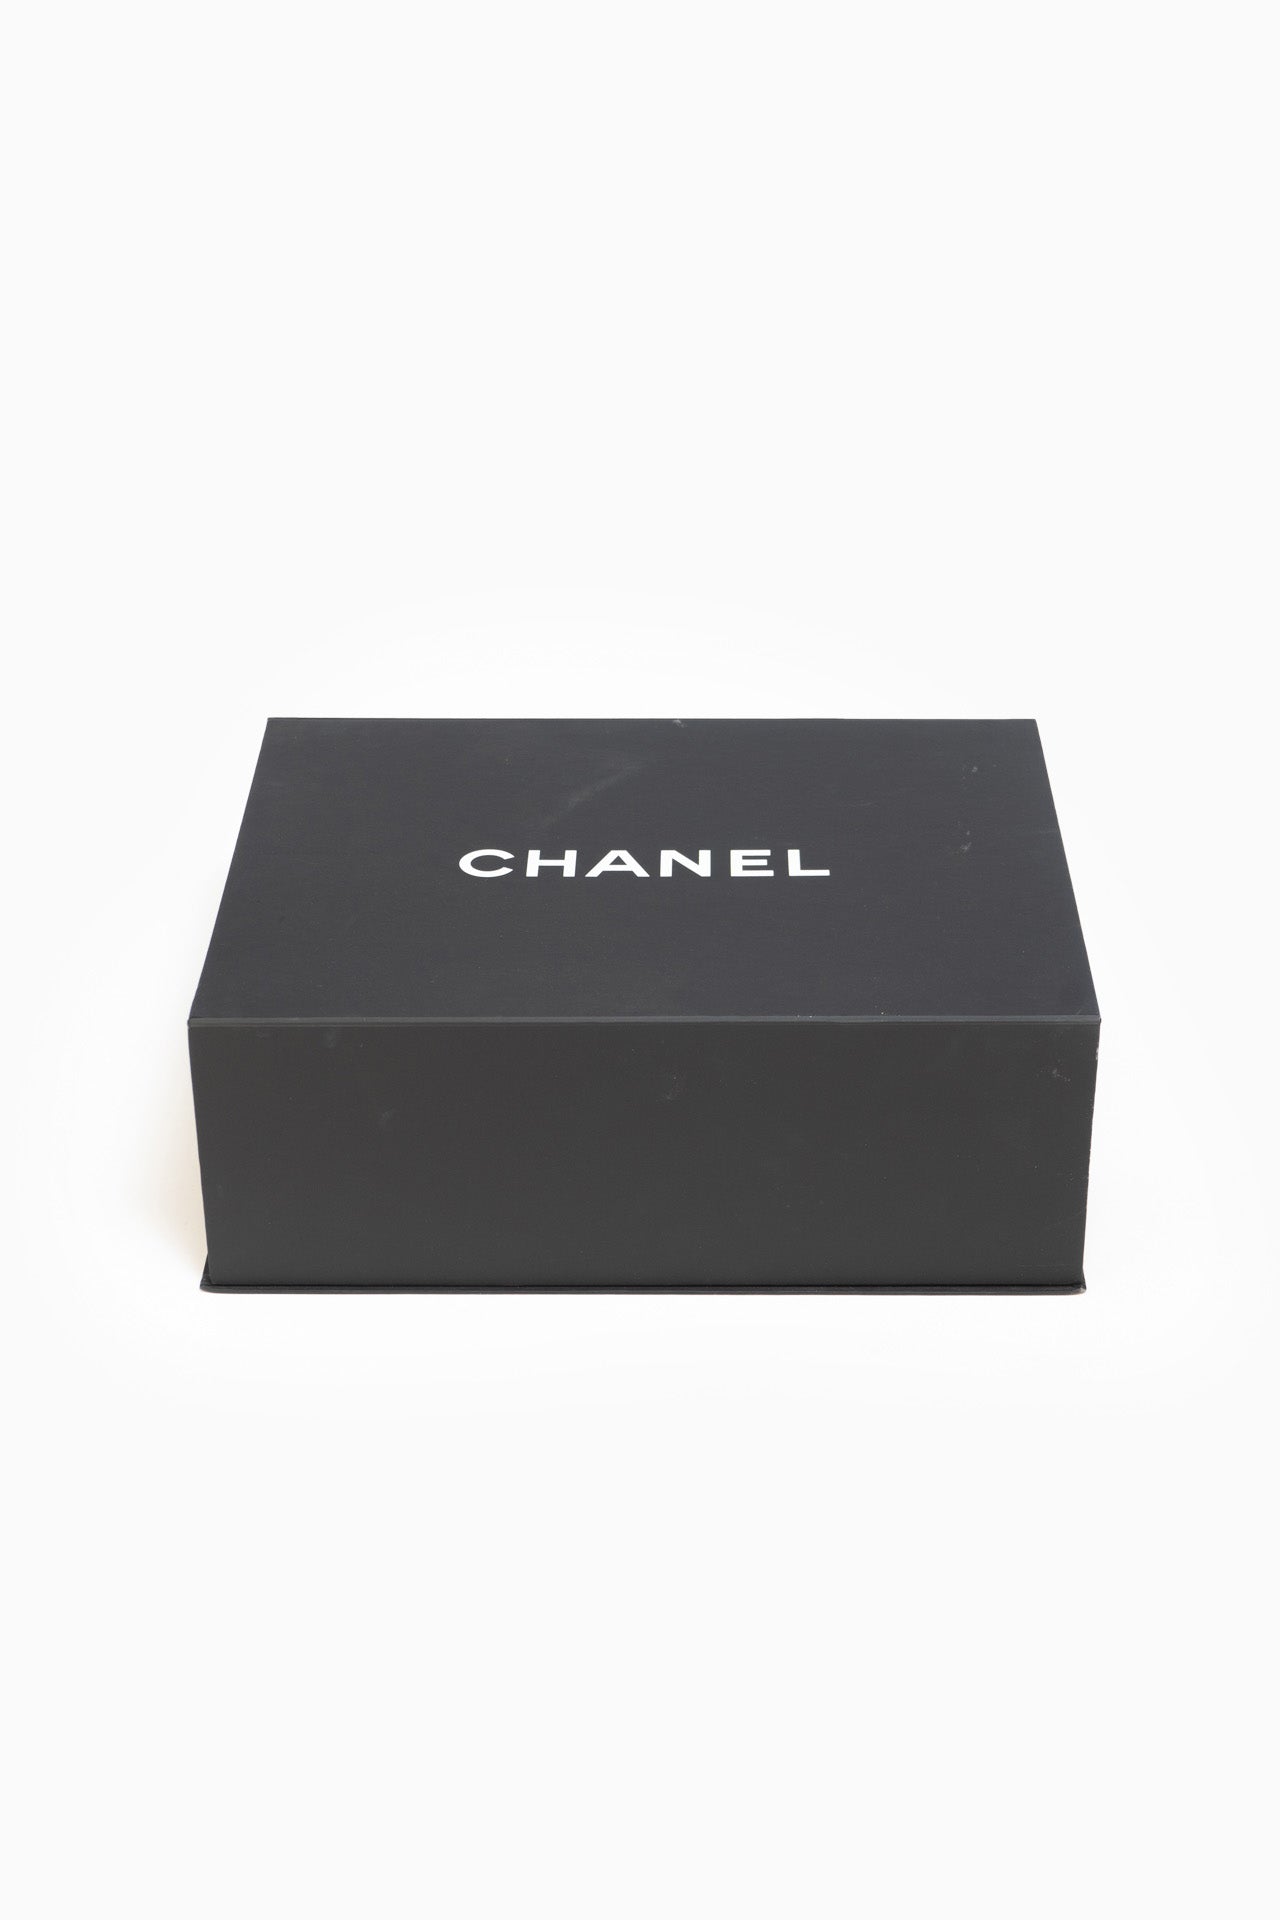 Chanel - Maxi Jumbo Big Logo Bag - With Box and Dust Bag